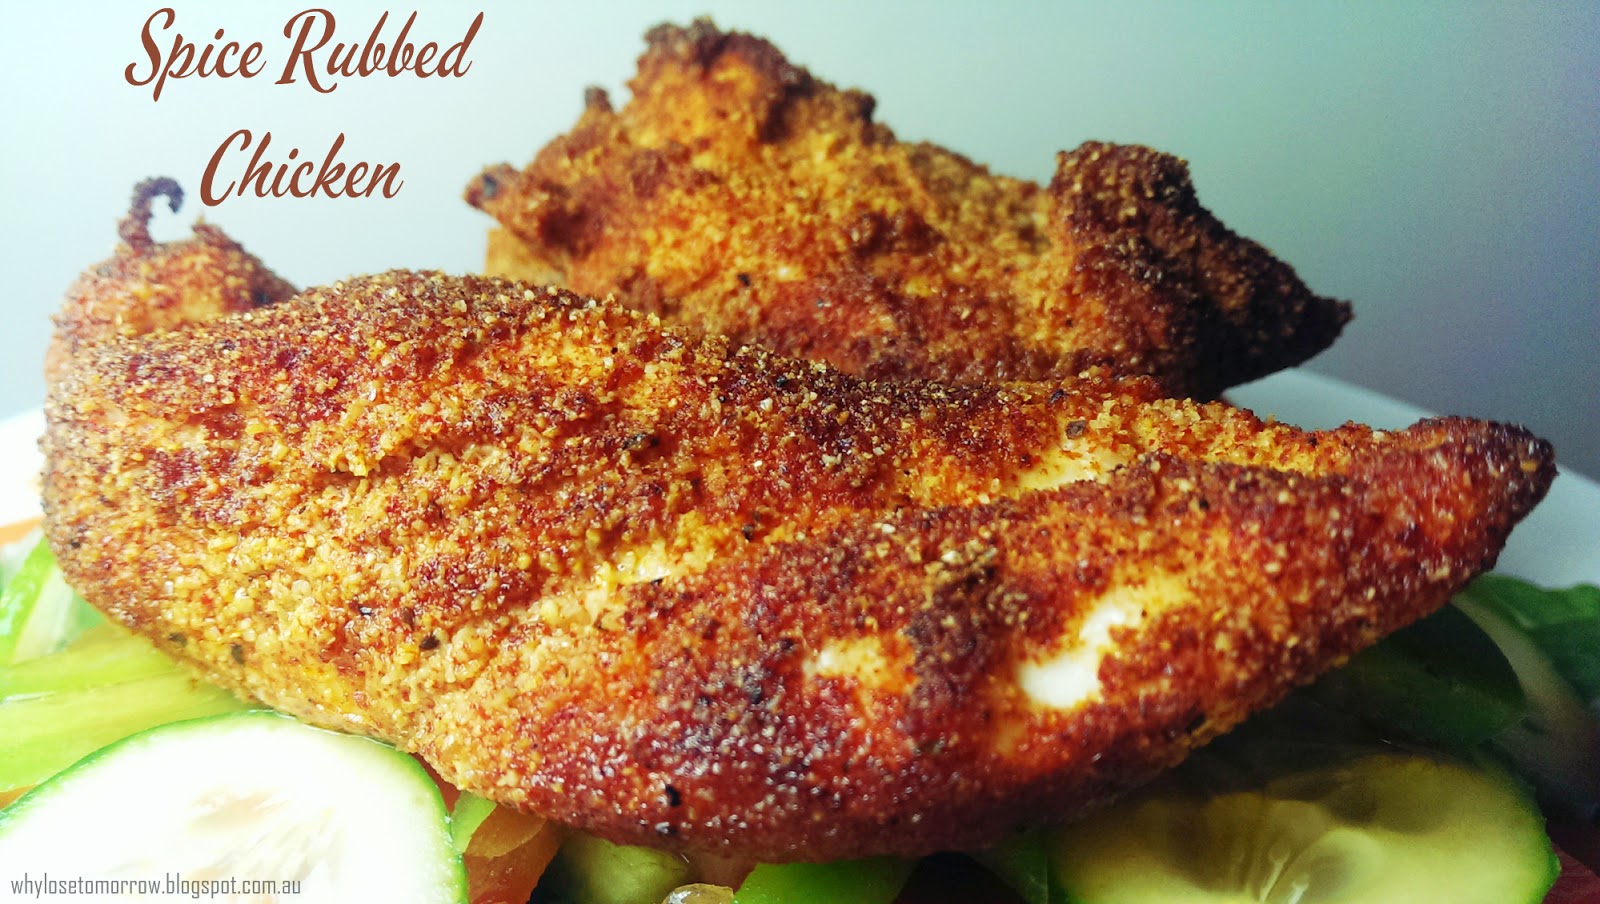 Why Lose Tomorrow?: Spice Rubbed Chicken - Paleo Recipe